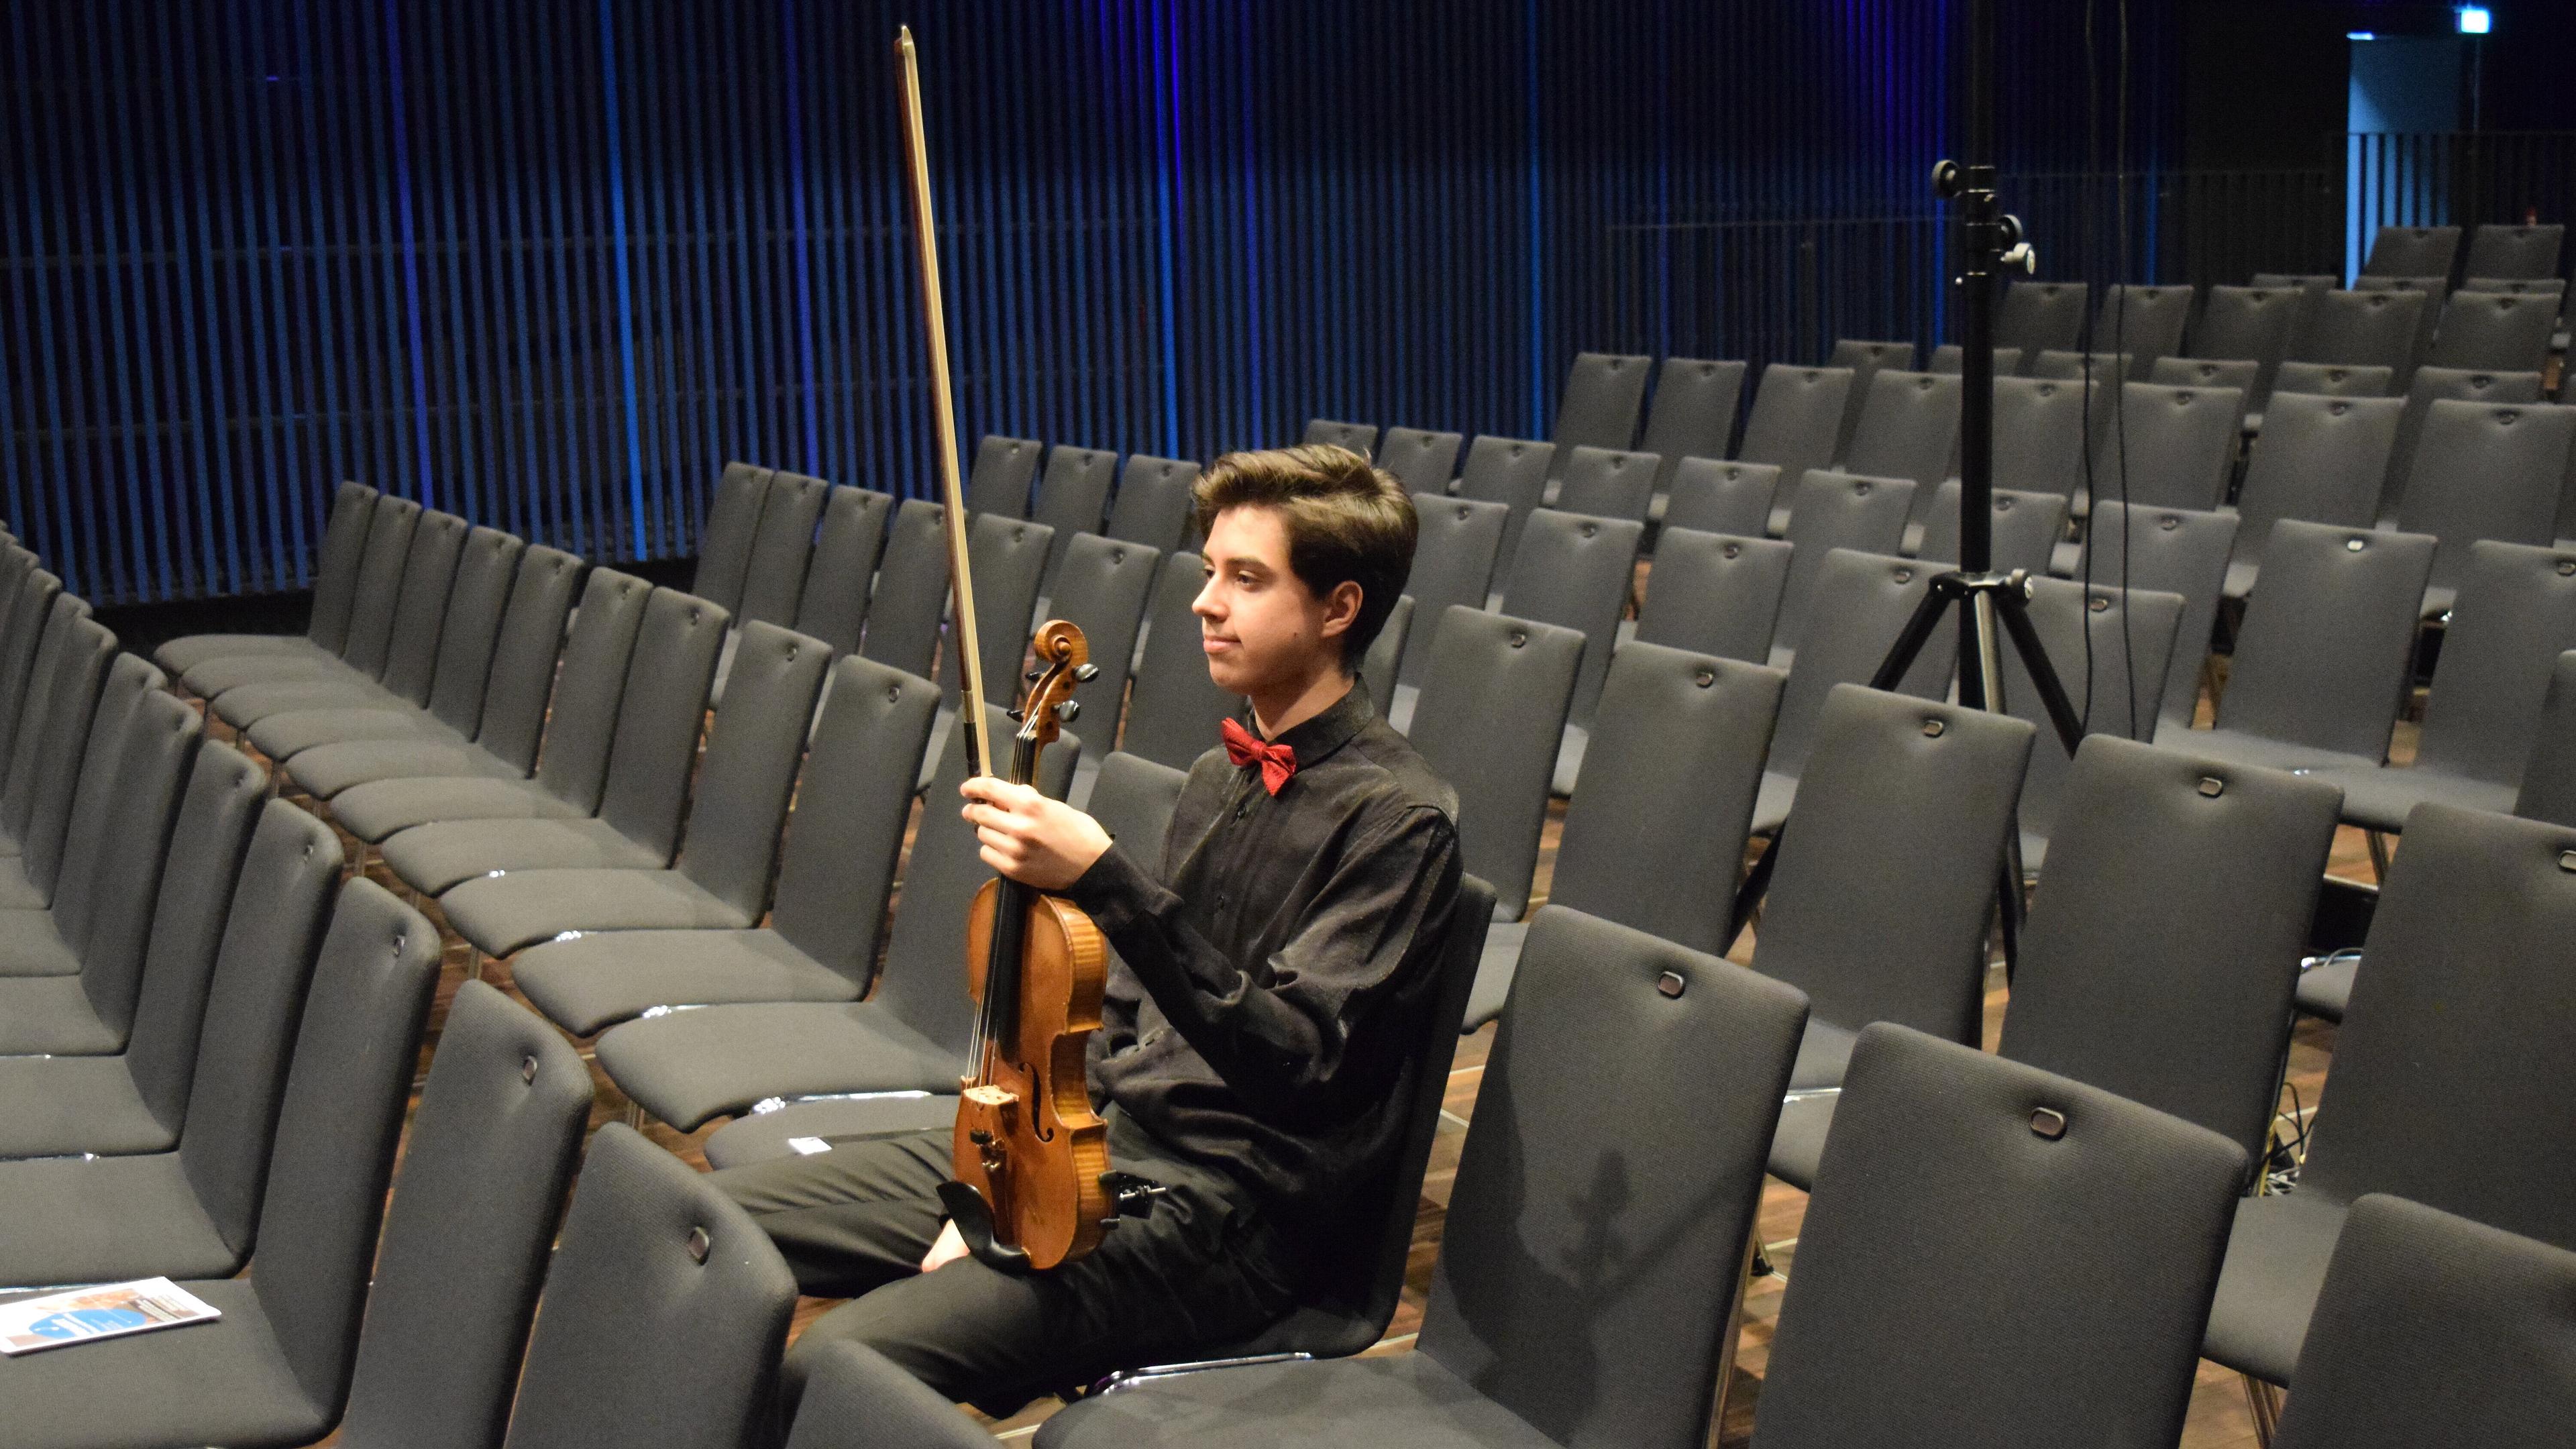 Jugendliche Person in Konzertkleidung hält eine Geige in der Hand, sitzt allein in leeren Stuhlreihen und wartet.